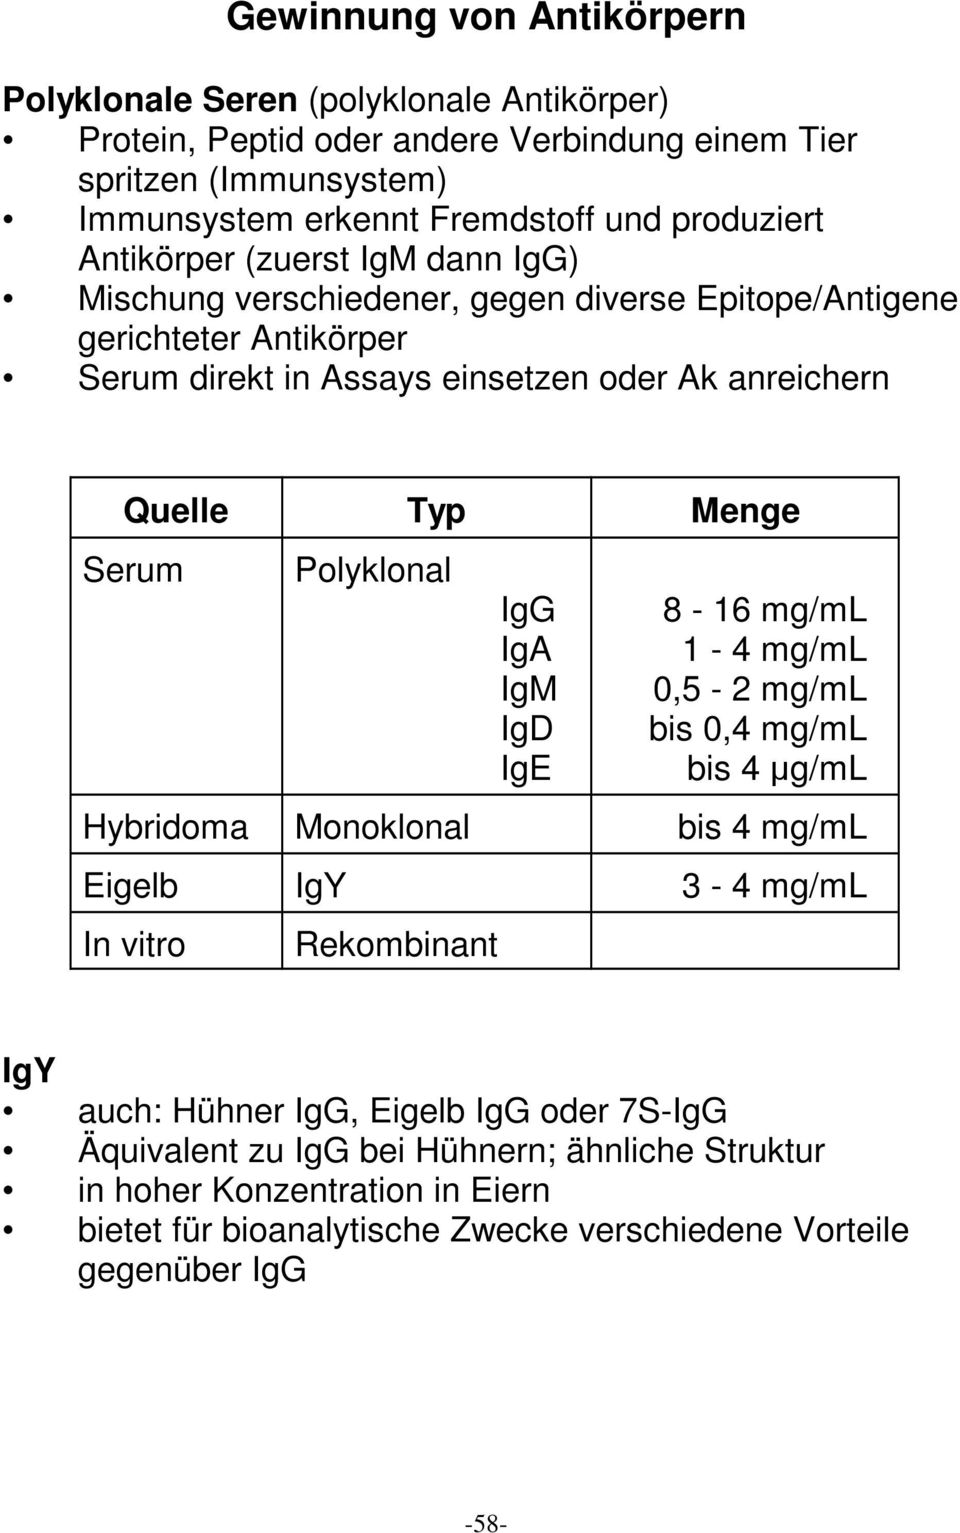 Menge Serum Polyklonal IgG IgA IgM IgD IgE 8-16 mg/ml 1-4 mg/ml 0,5-2 mg/ml bis 0,4 mg/ml bis 4 :g/ml Hybridoma Monoklonal bis 4 mg/ml Eigelb IgY 3-4 mg/ml In vitro Rekombinant IgY